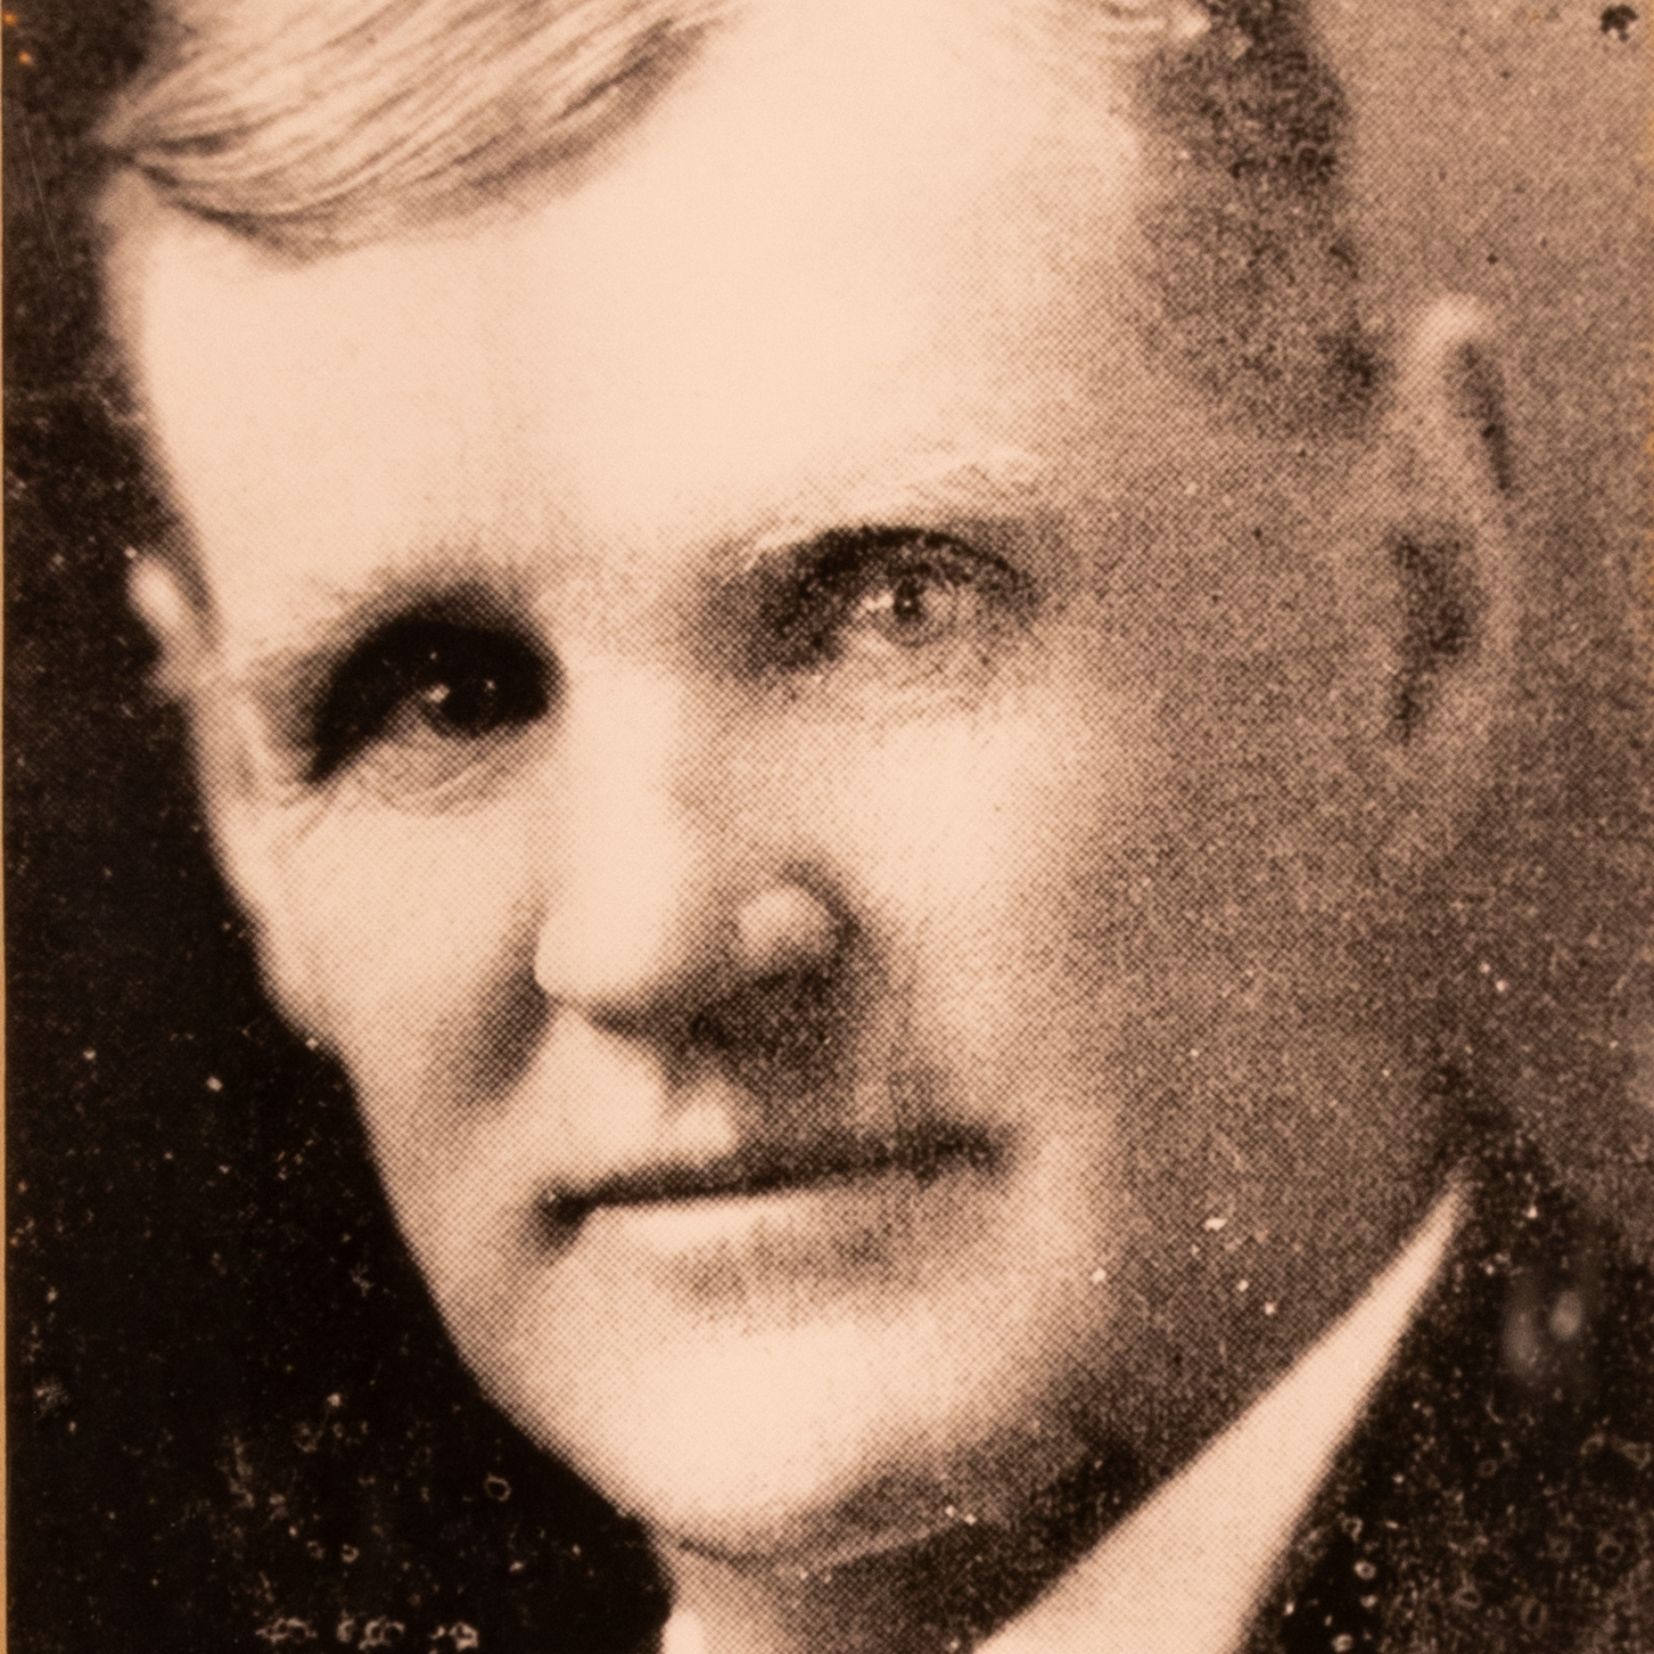 Mayor James H. Gardner